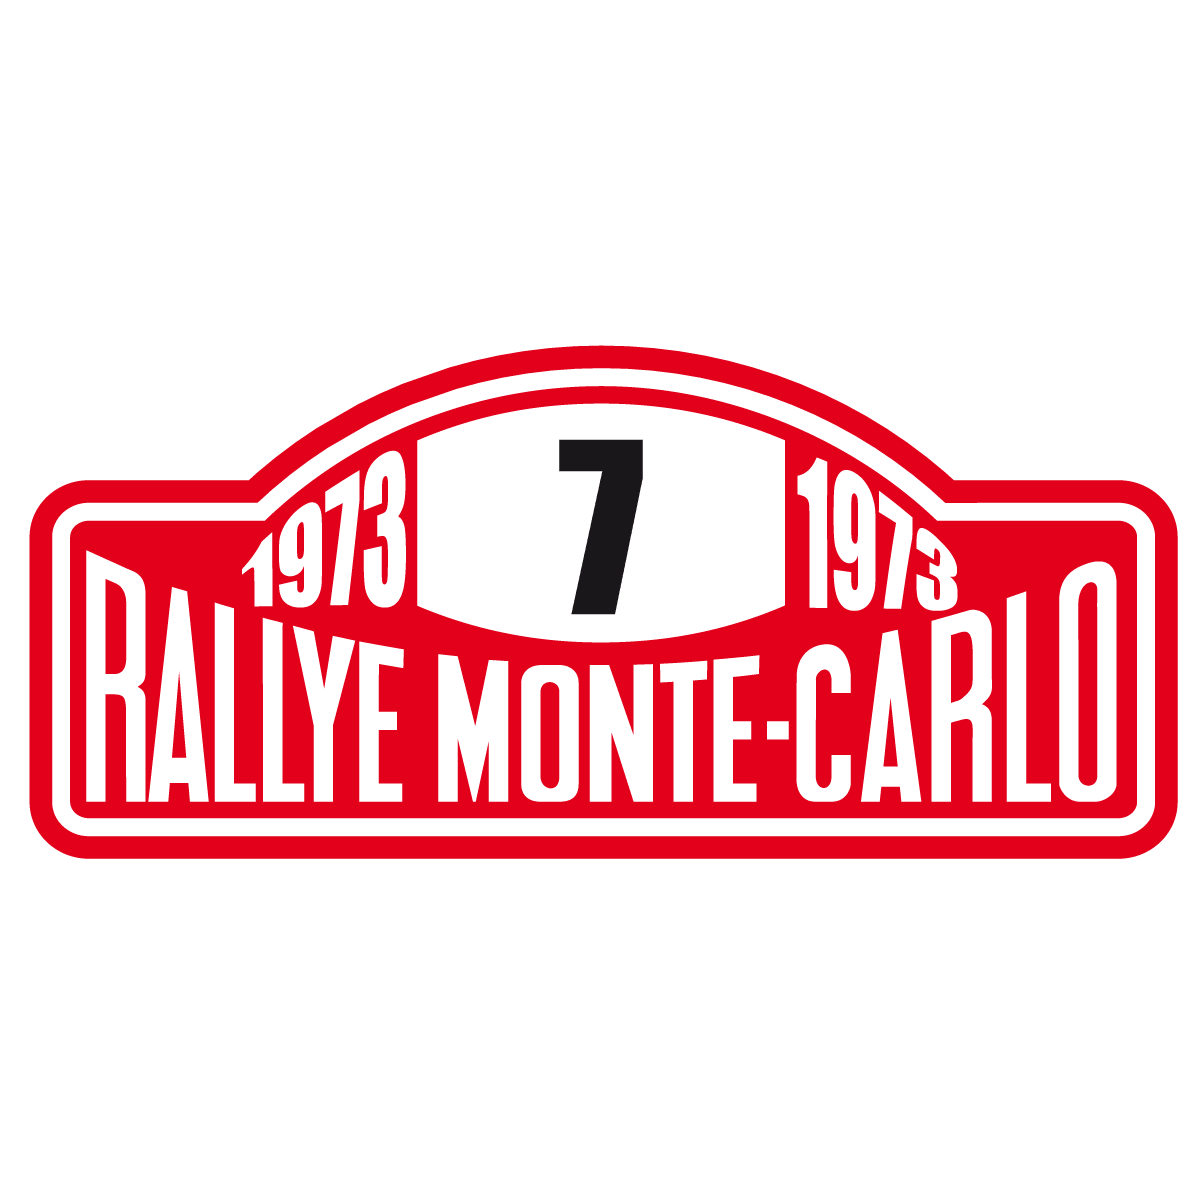 Aufkleber: Rallye Monte-Carlo